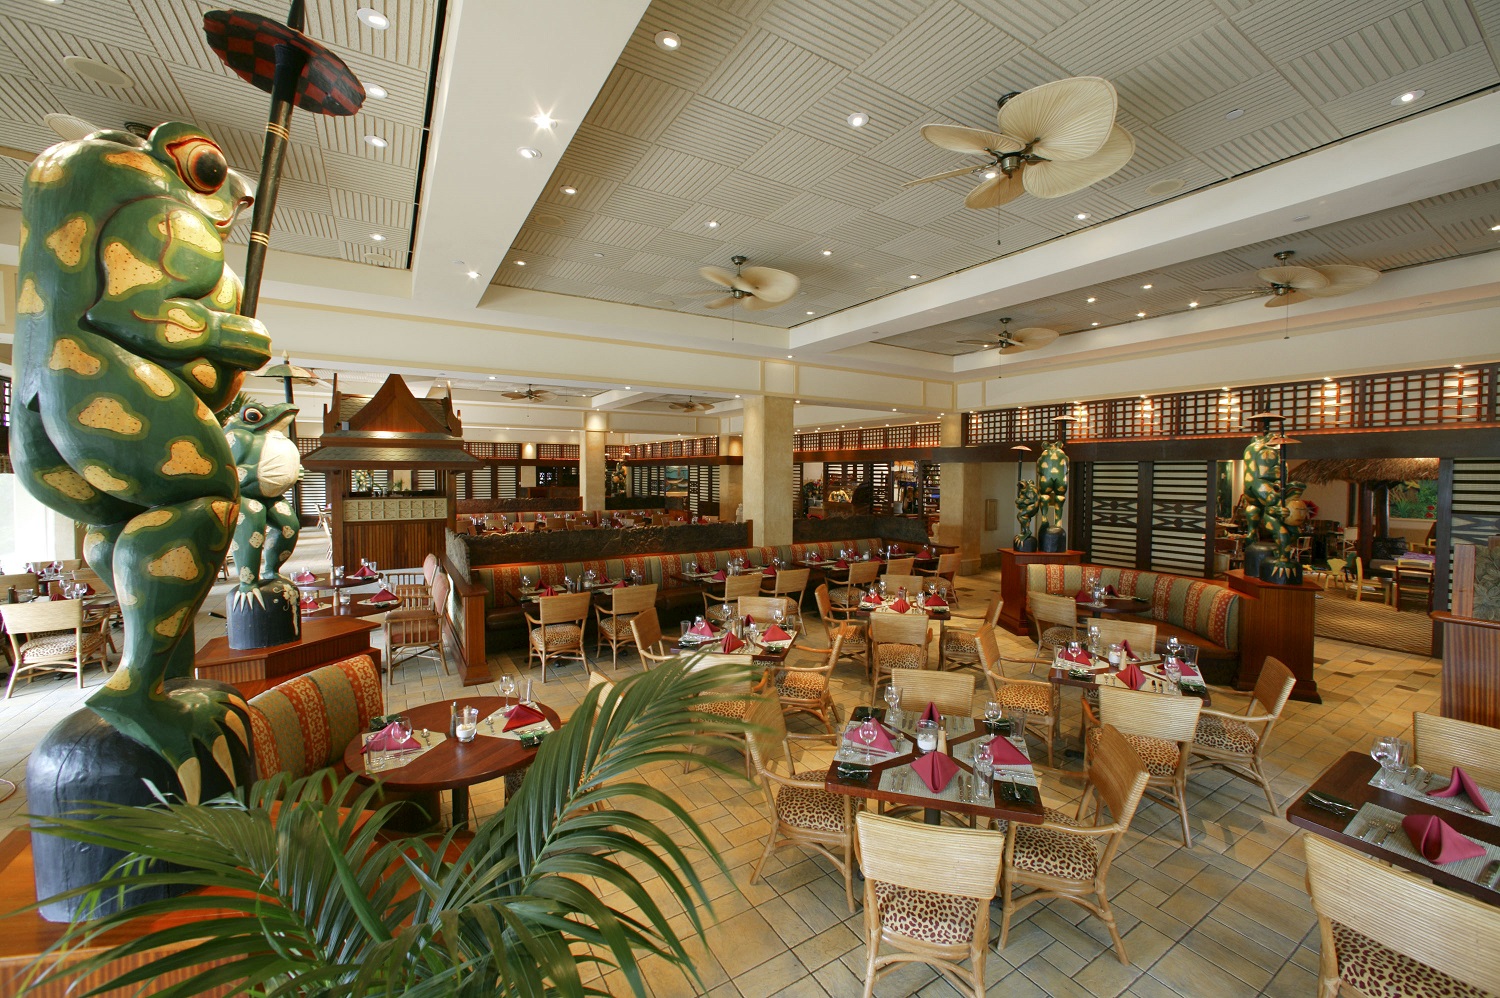 Loews Royal Pacific Resort Islands Dining Room Menu